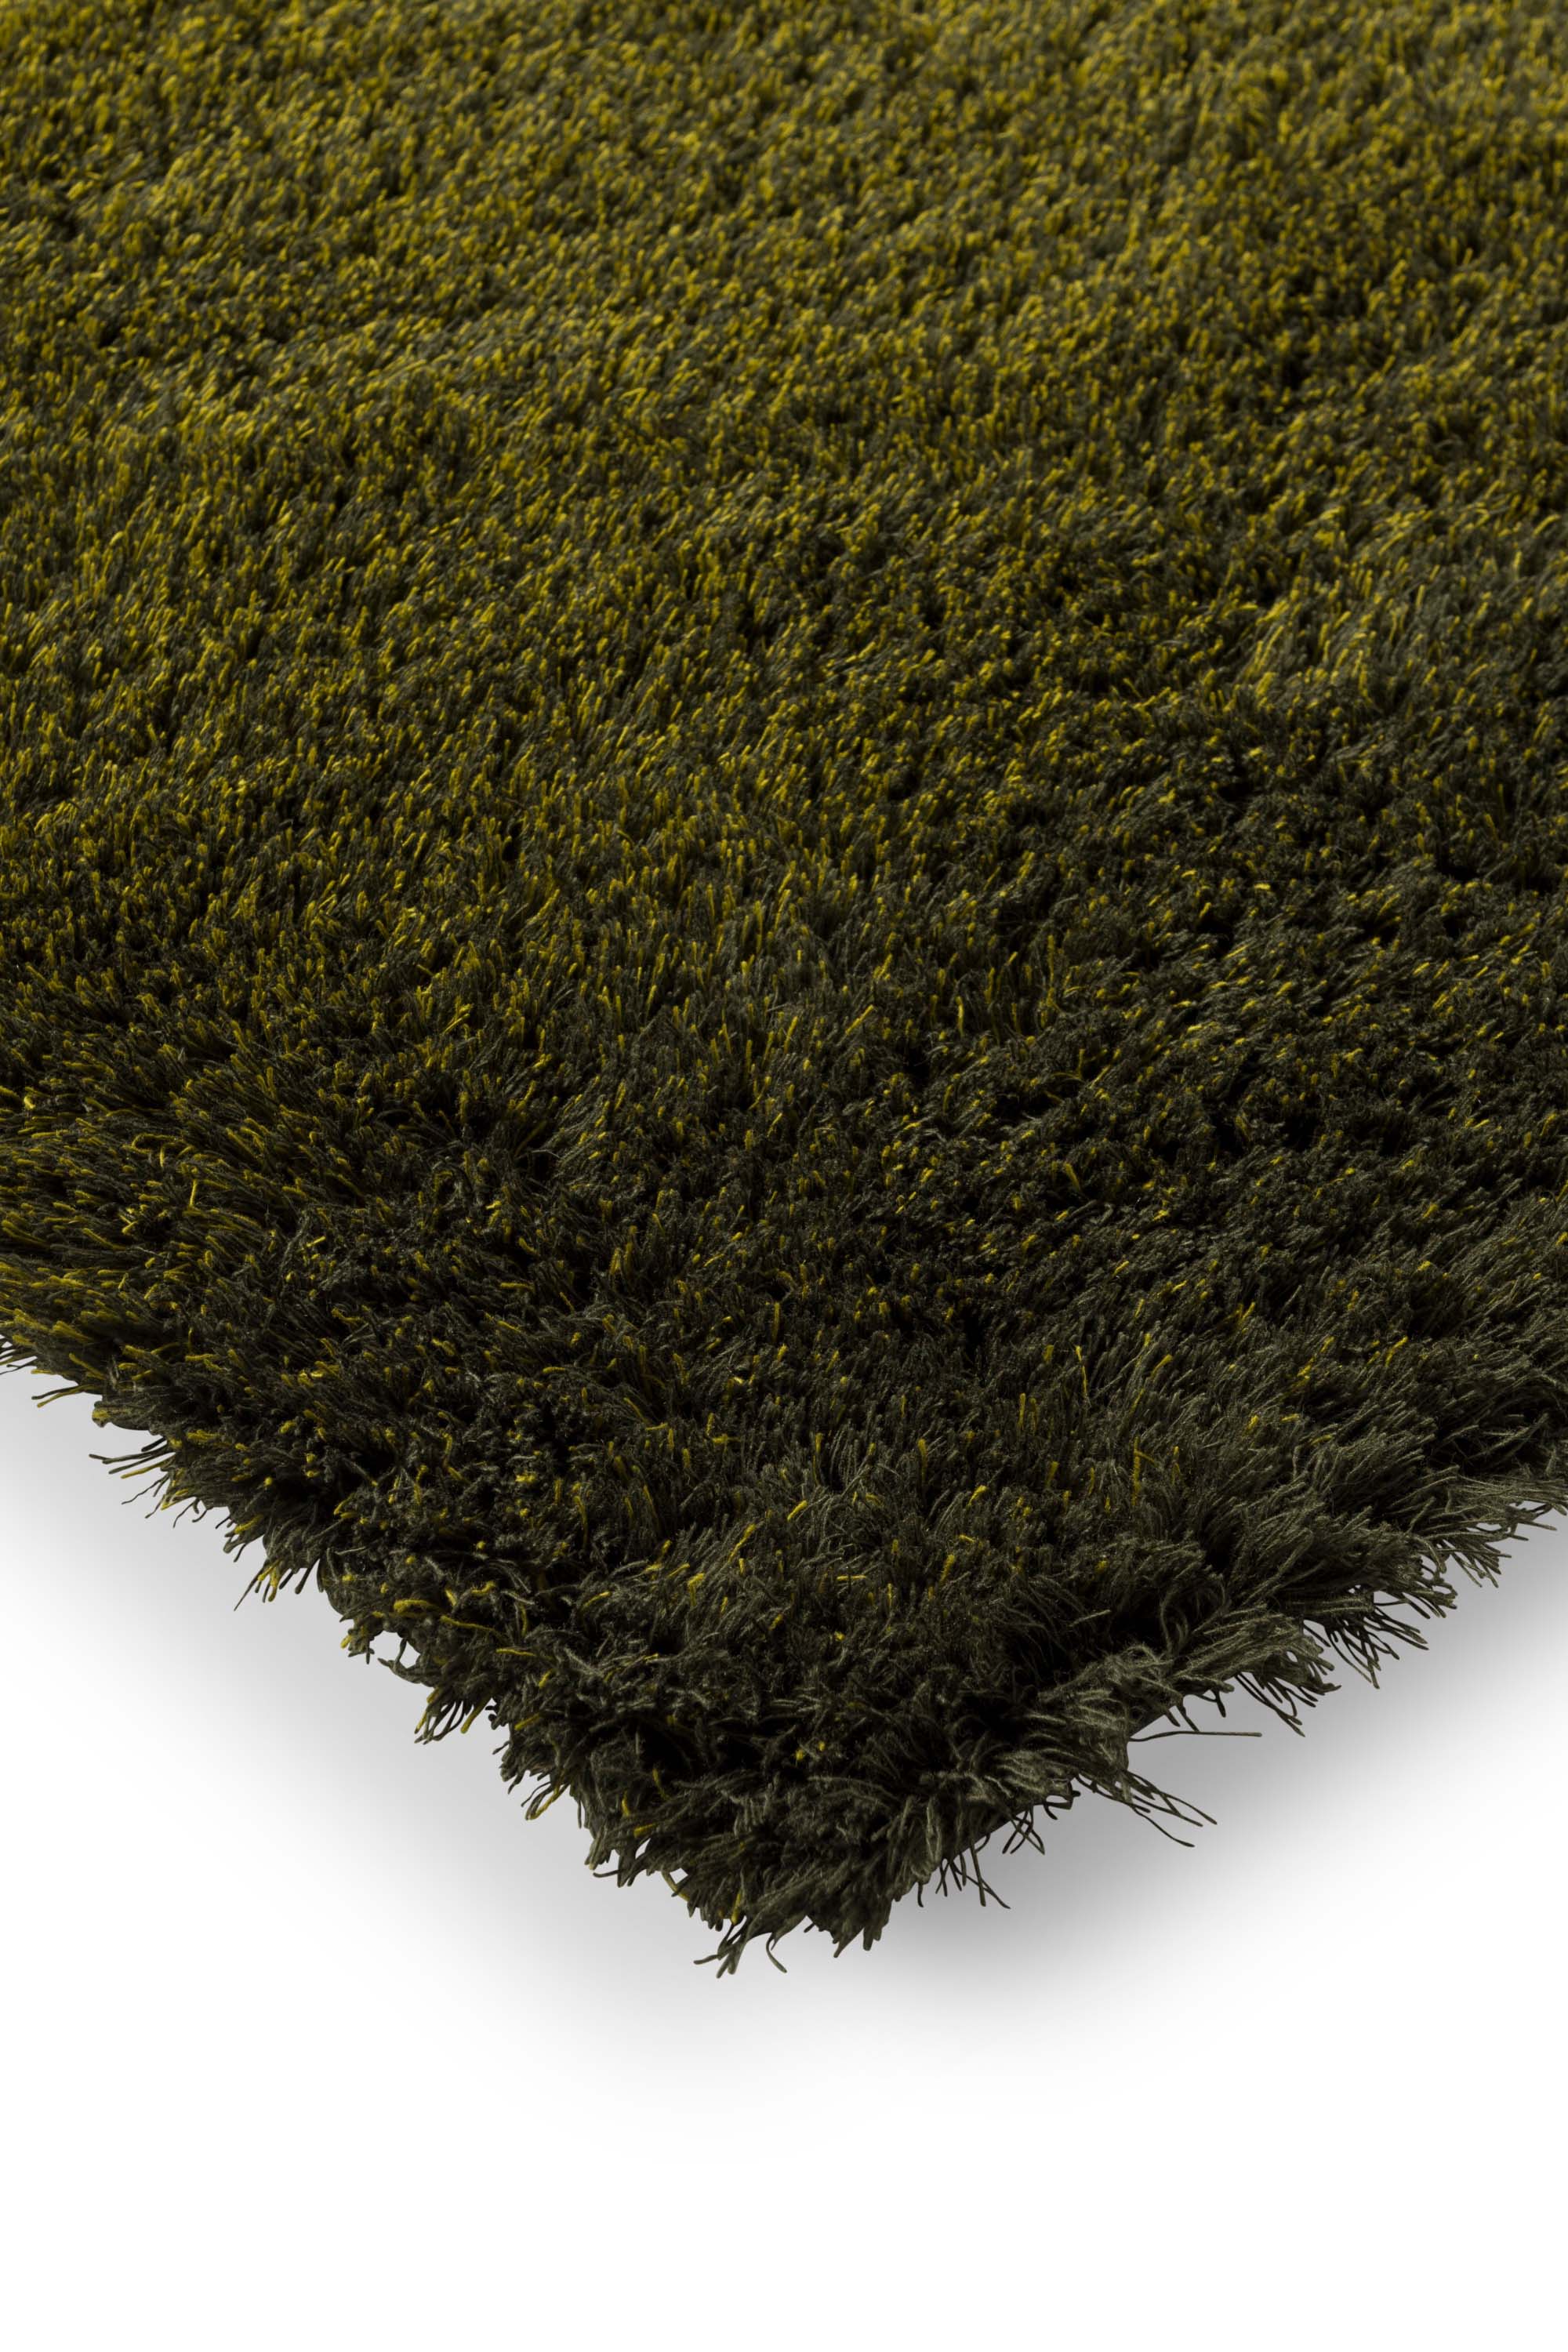 Plain green rug with shaggy pile